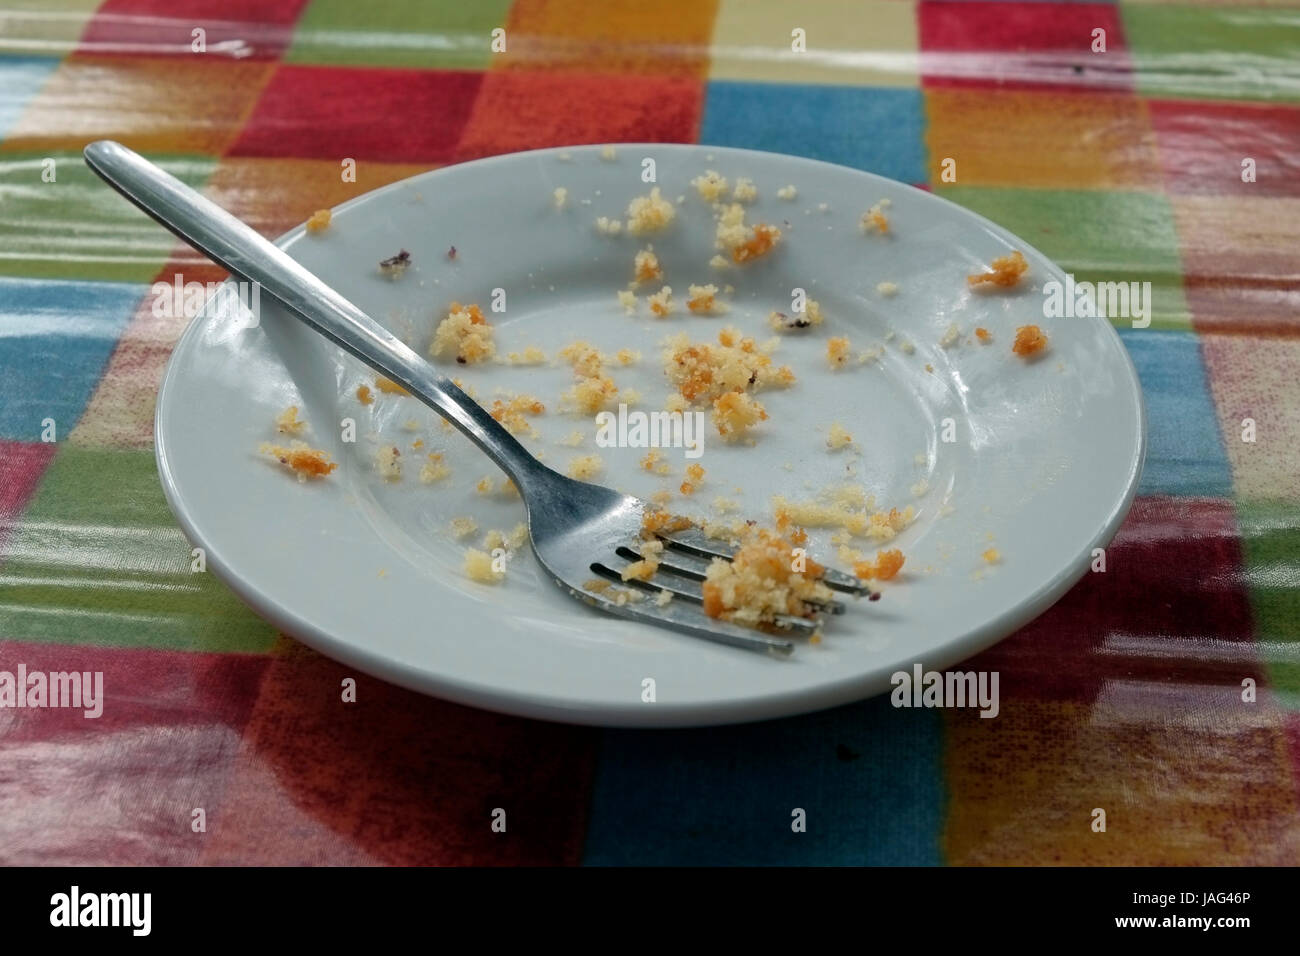 Eine leere kleine Teller mit einer Gabel und die Krümel aus eine Torte, die gegessen hat, sitzt auf einer glänzenden Tischdecke mit Muli-farbige Quadrate. Stockfoto